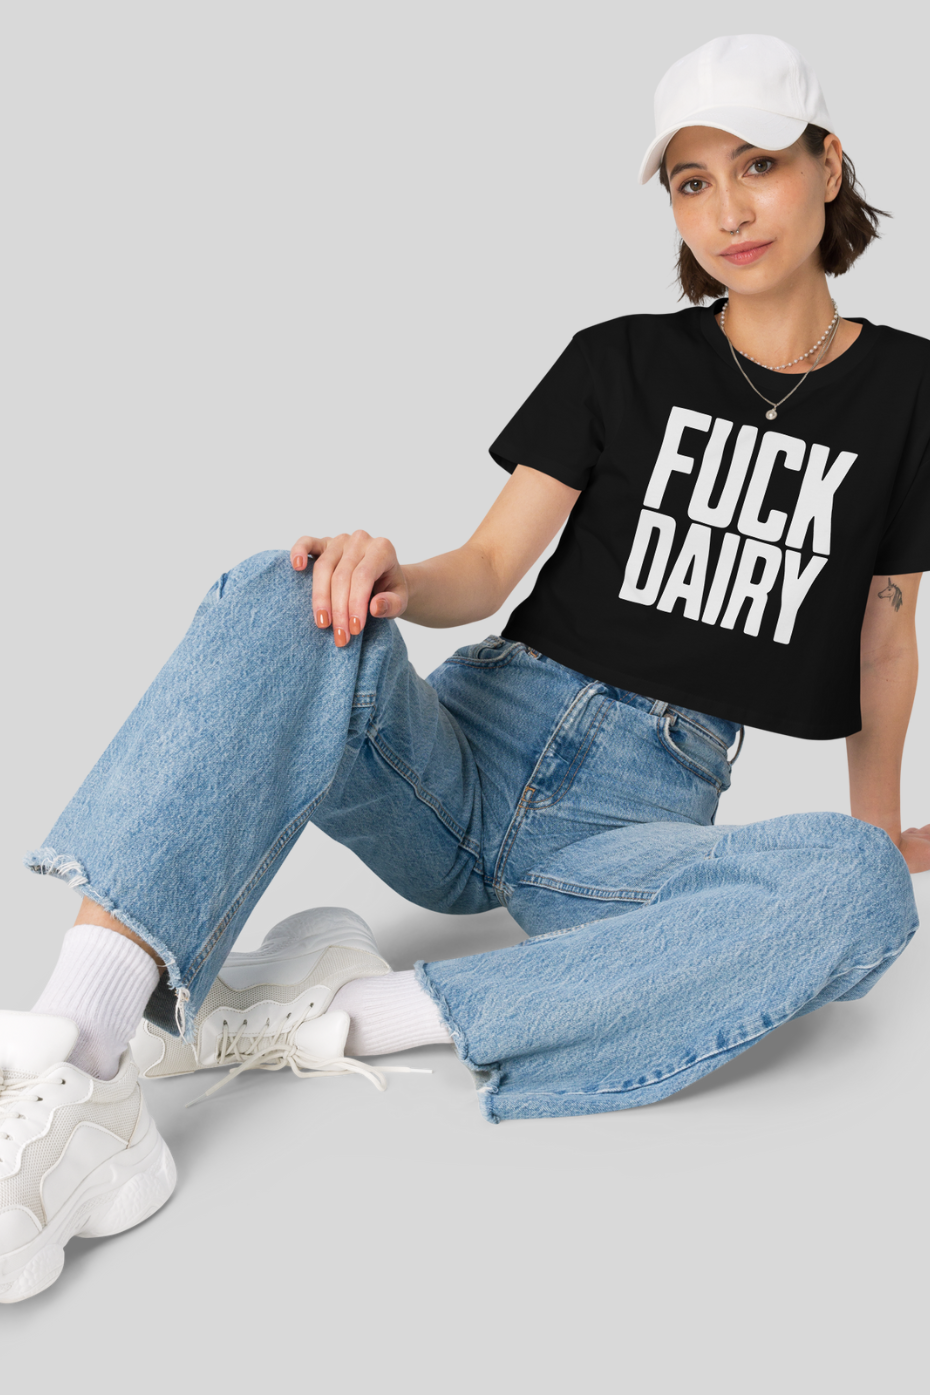 Fuck Dairy - Women’s crop top